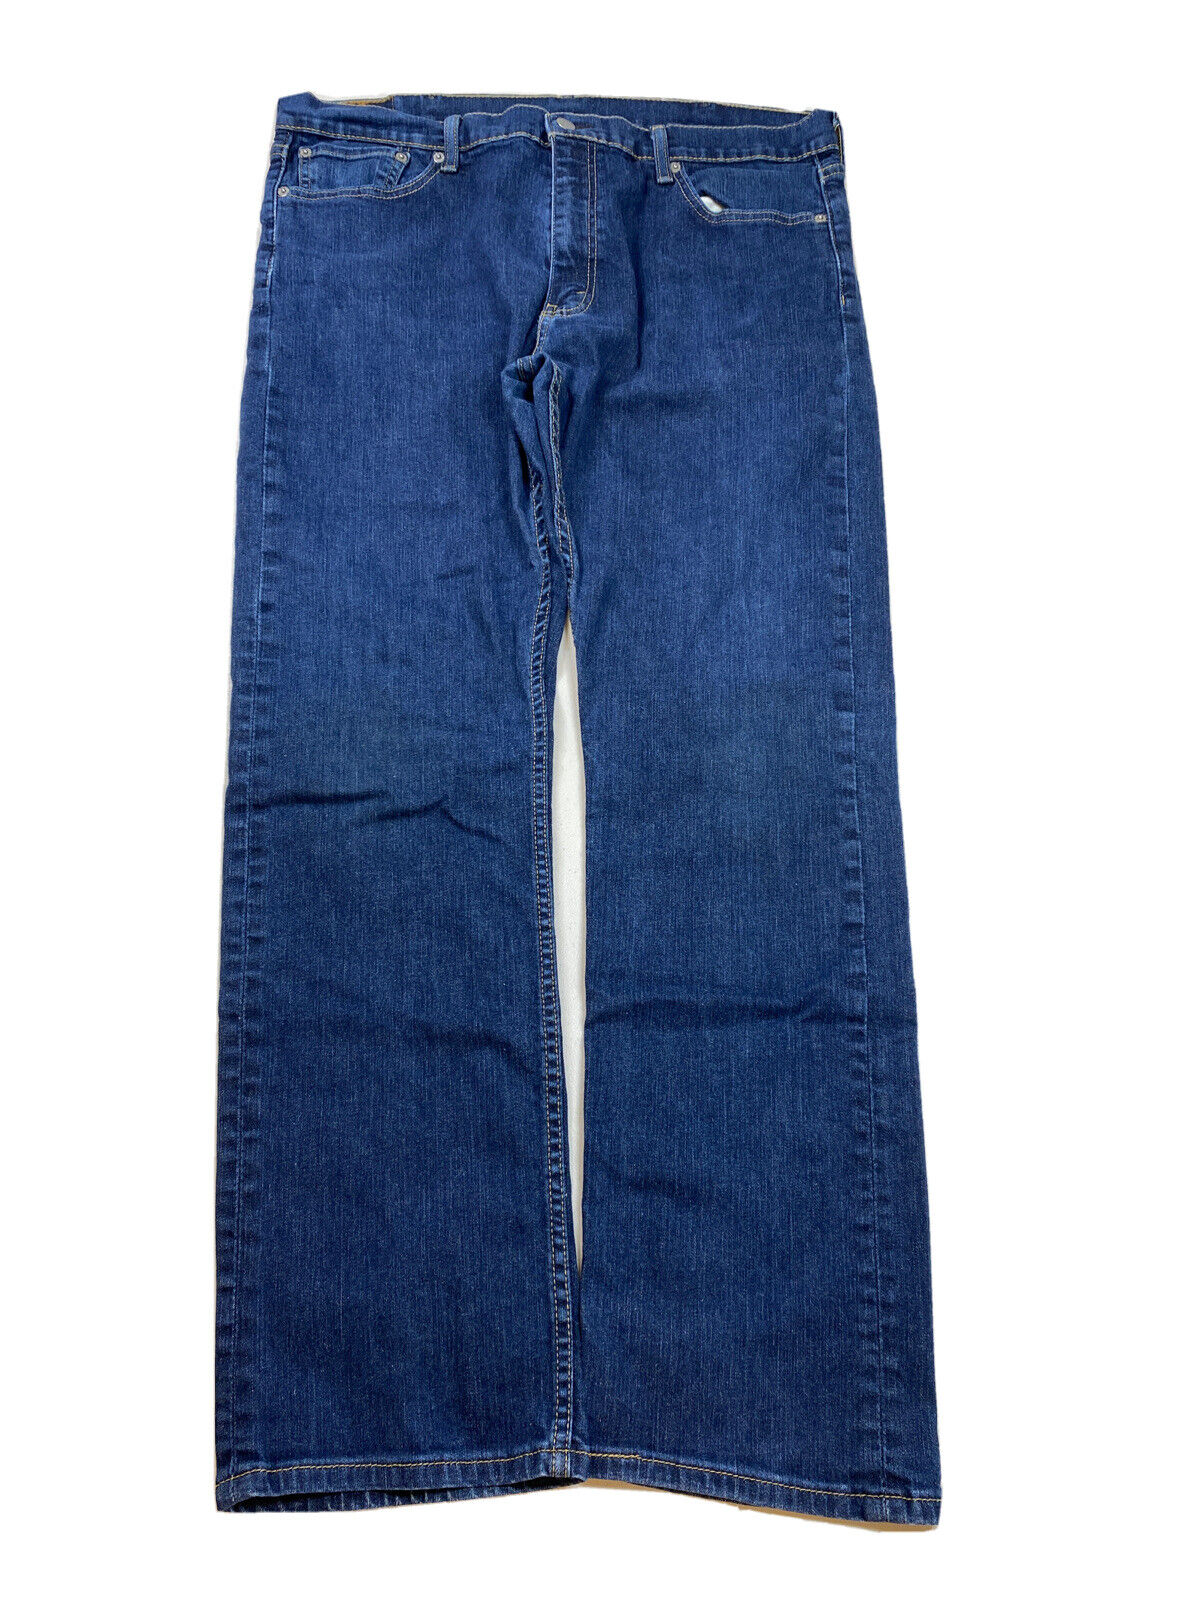 Levis Men's Dark Wash 513 Slim Straight Denim Jeans - 38x32